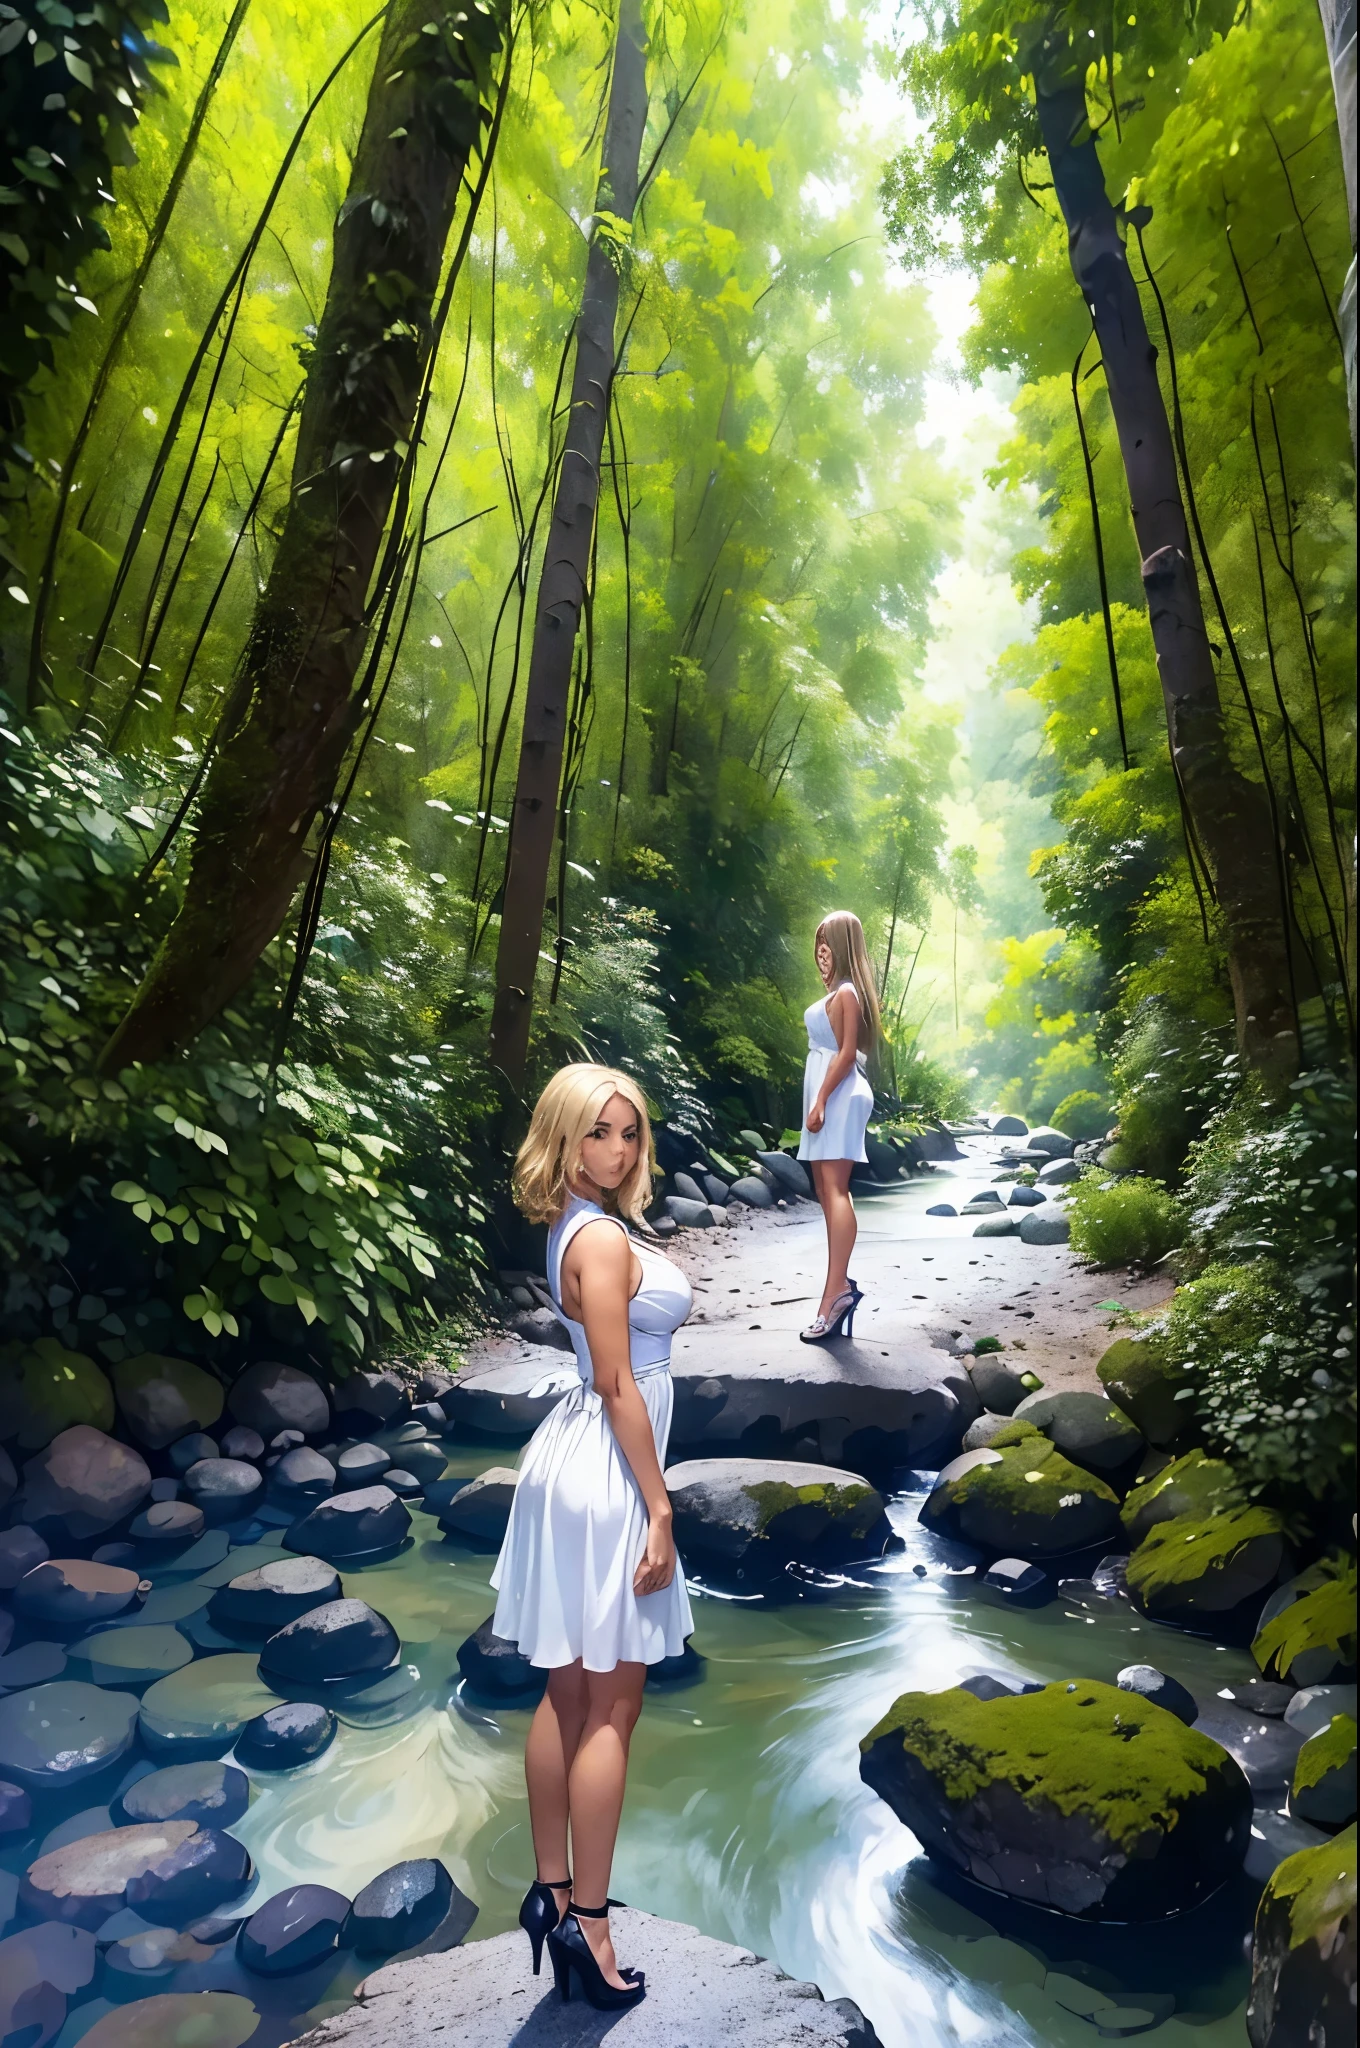 ((最好的品質)), ((傑作)), (詳細的), 完美的臉型, 一個美麗, 動漫風格的金髮女孩站在河邊的石路上. 她穿著白色短裙和高跟鞋. 周圍的環境是樹木繁茂的森林和雲彩繚繞的天空.